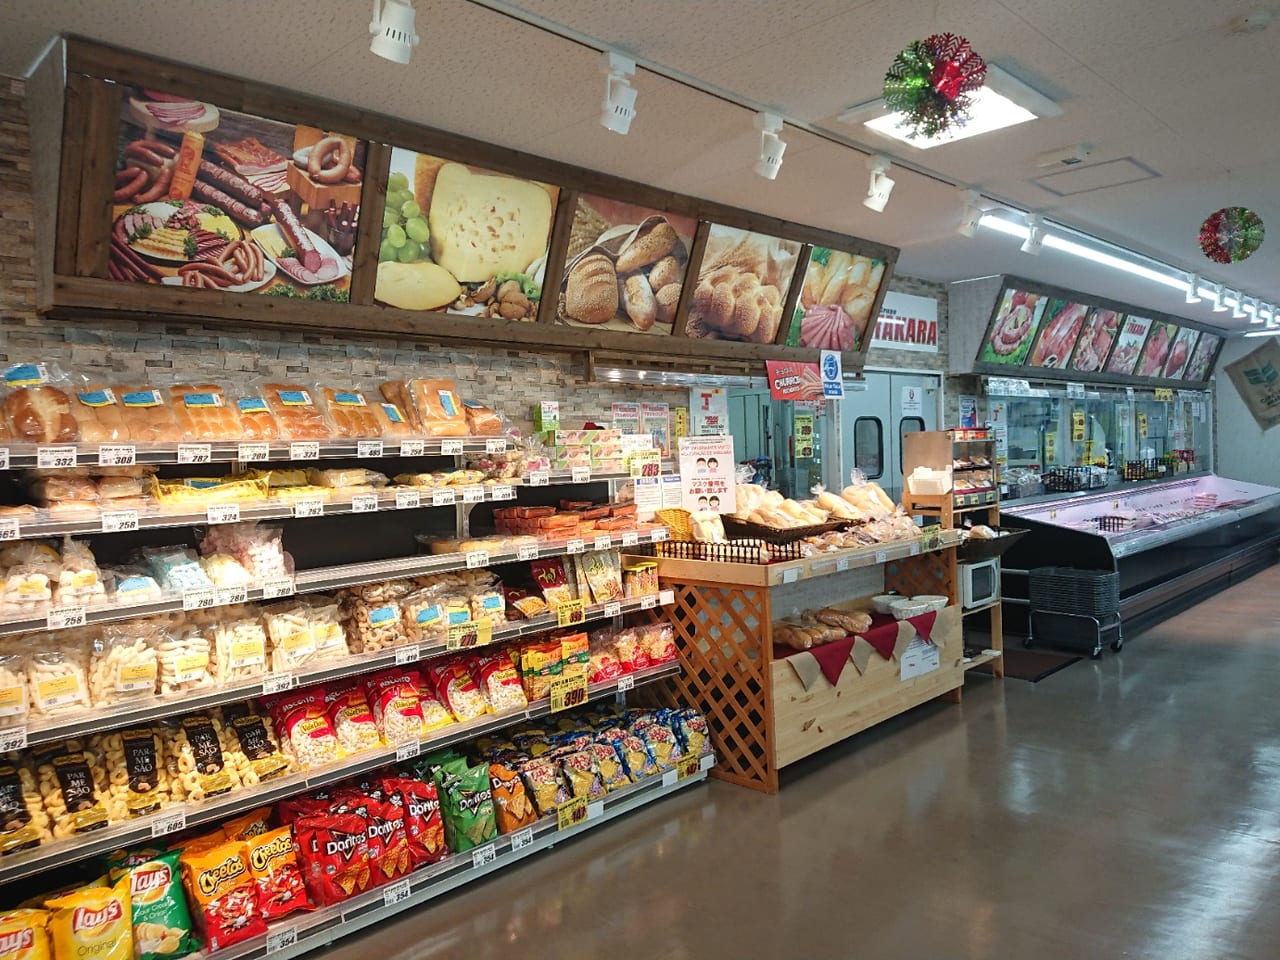 伊勢崎市 もはやここは海外 多国籍スーパーマーケット Takara で異国情緒を味わってみませんか 号外net 伊勢崎市